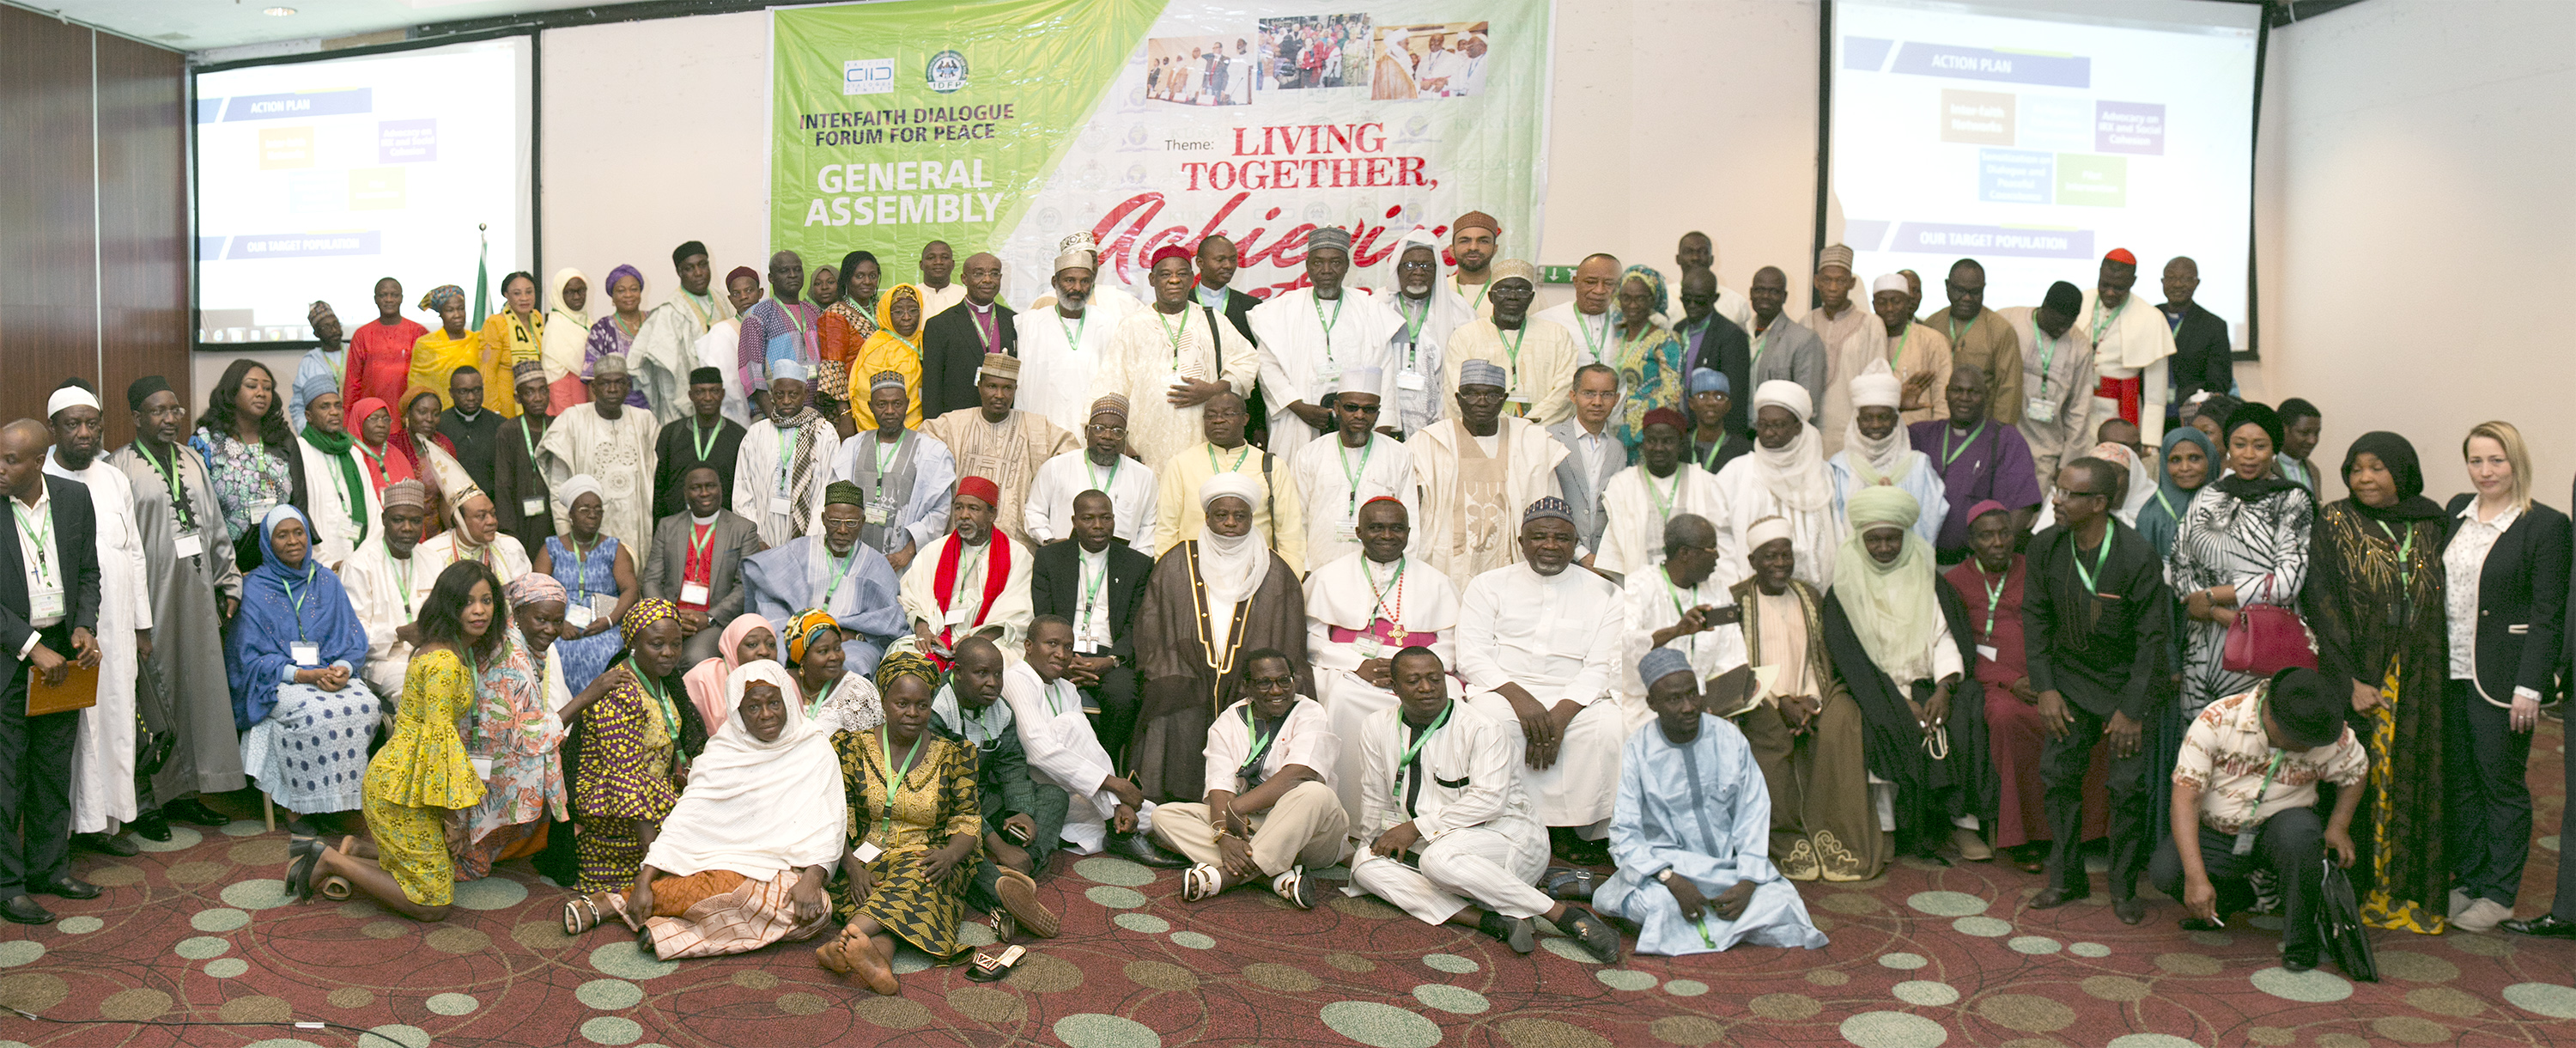 Frieden und Versöhnung durch interreligiösen Dialog in Nigeria